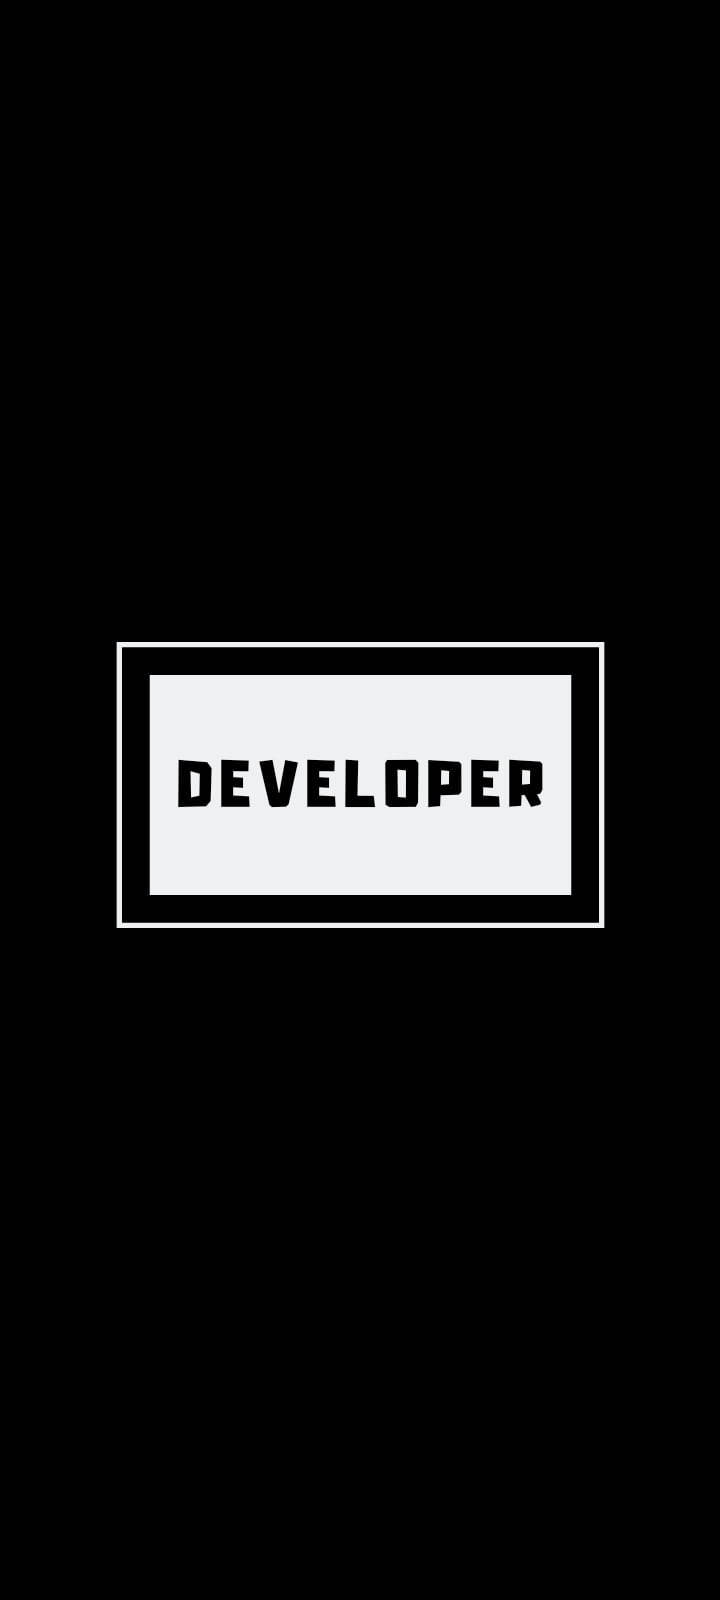 Programming Iphone Developer Inside White Box